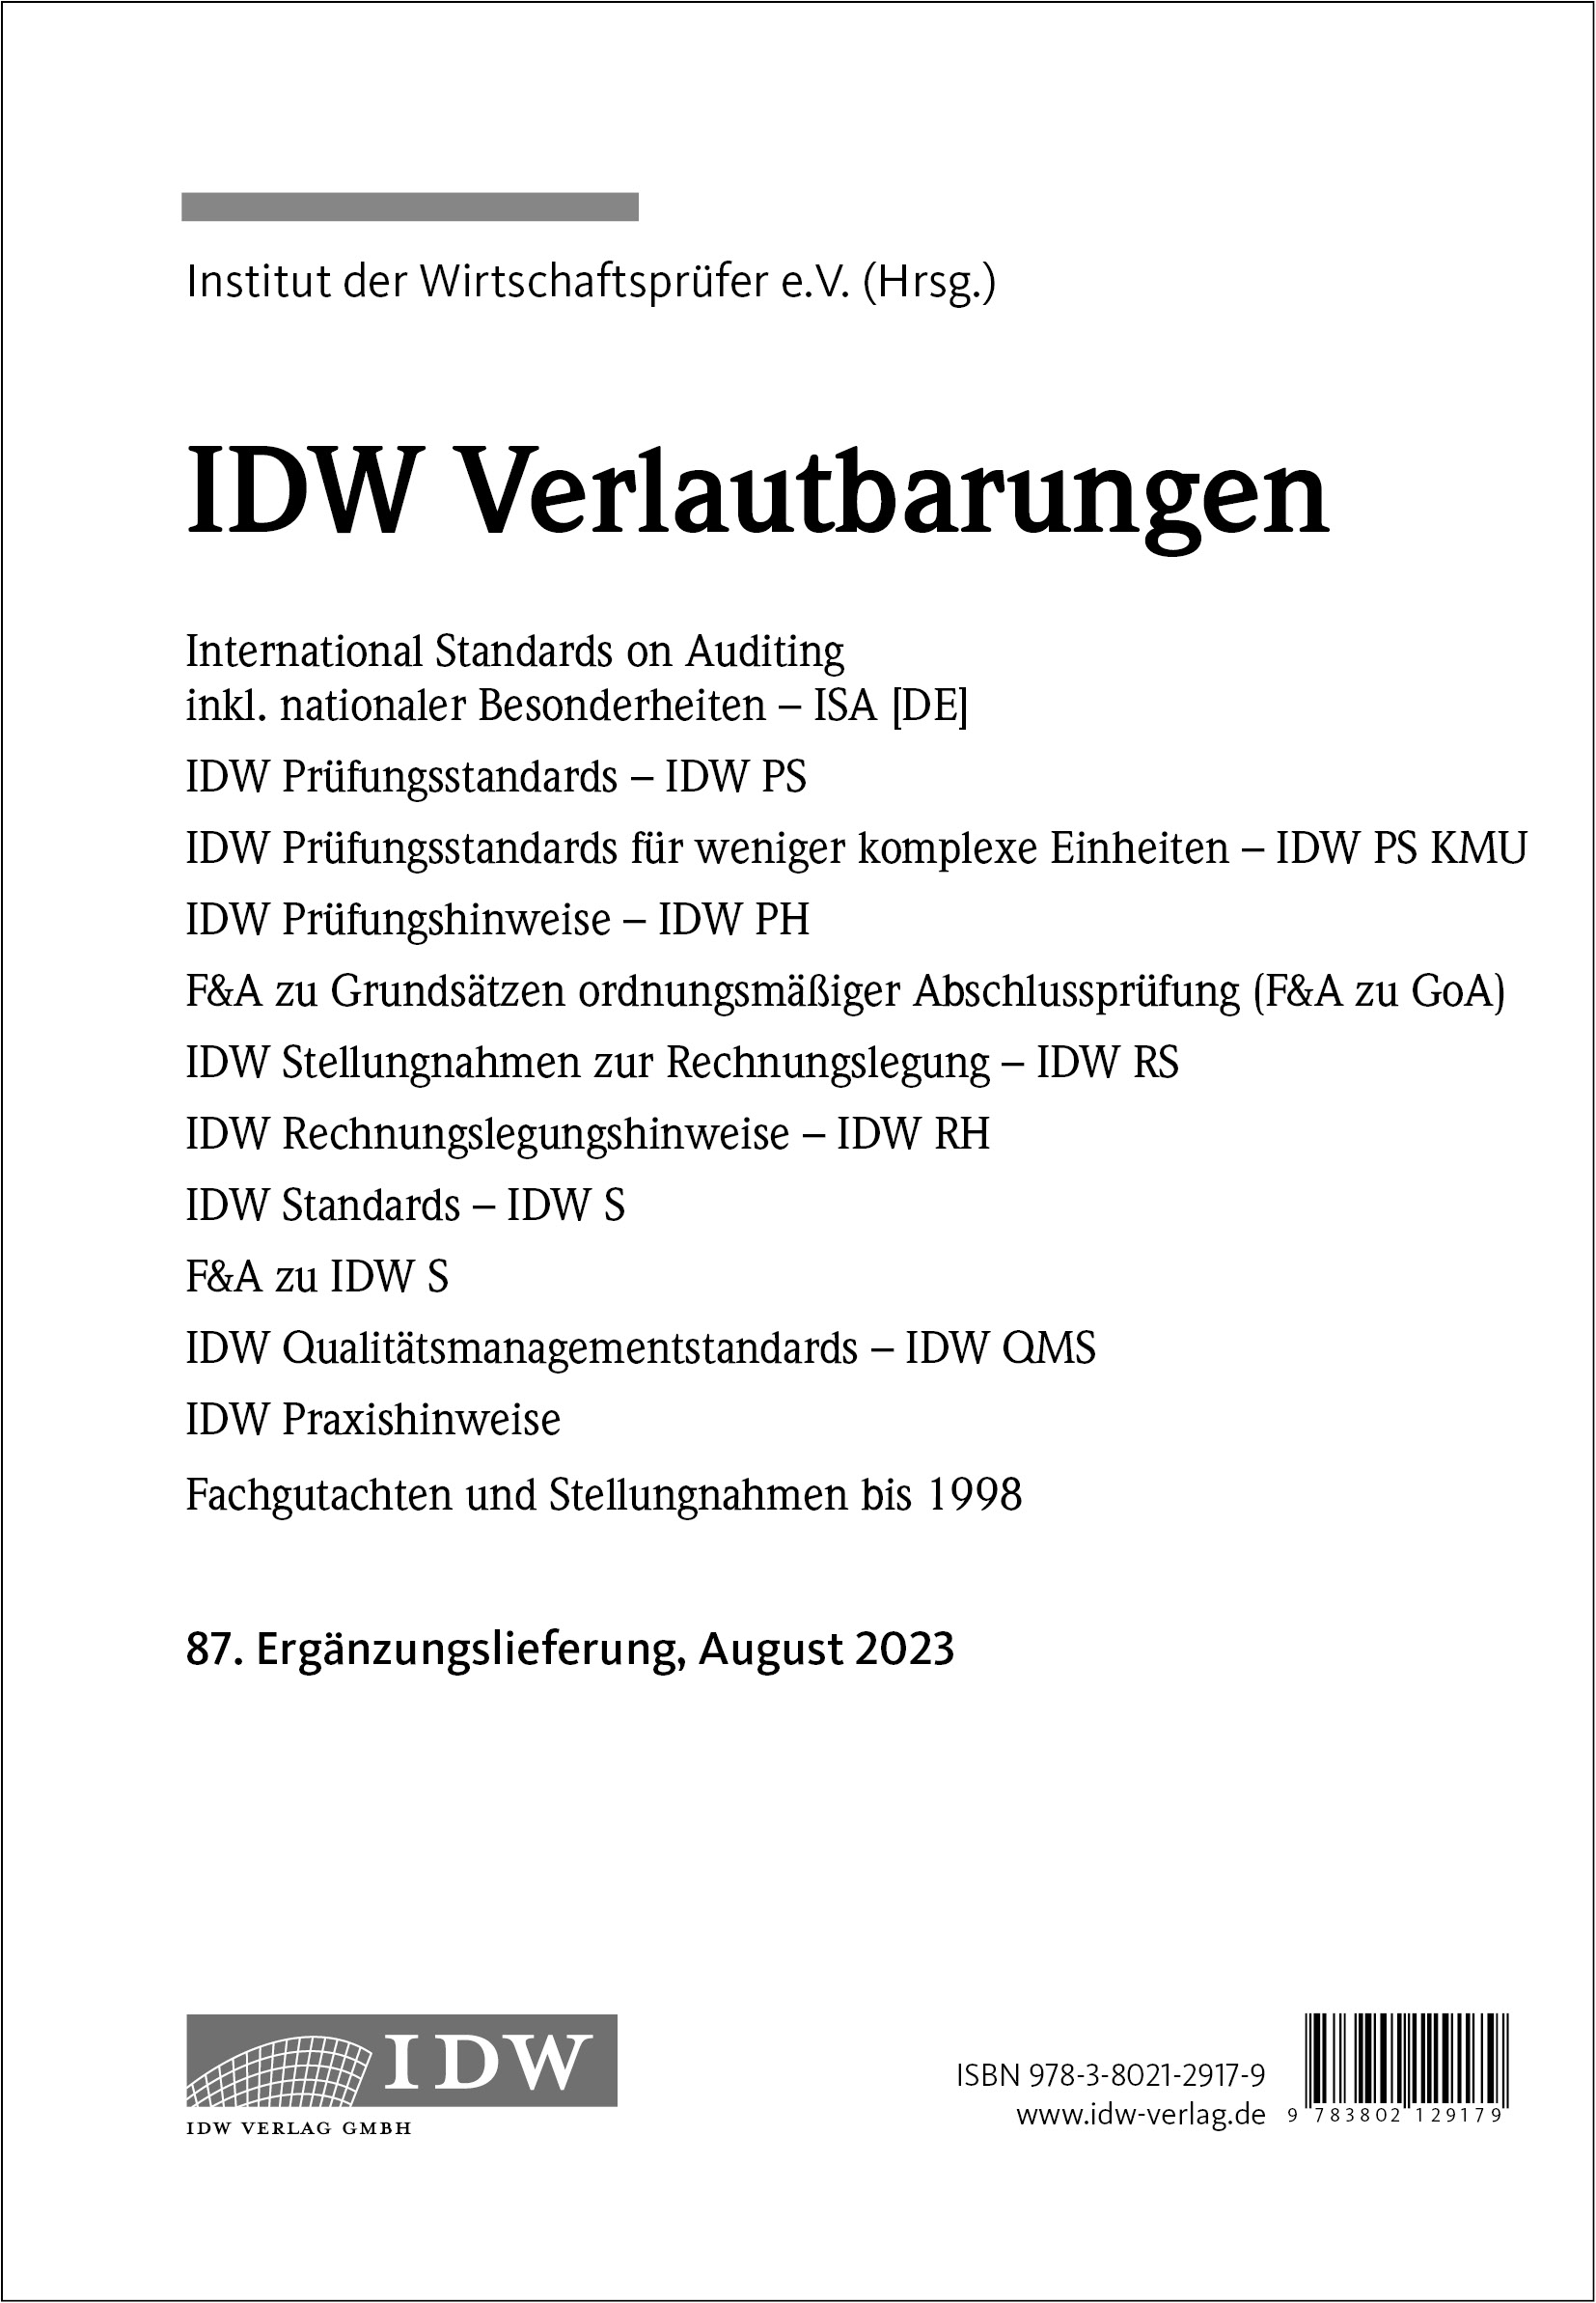 IDW Verlautbarungen - 87. Ergänzungslieferung   